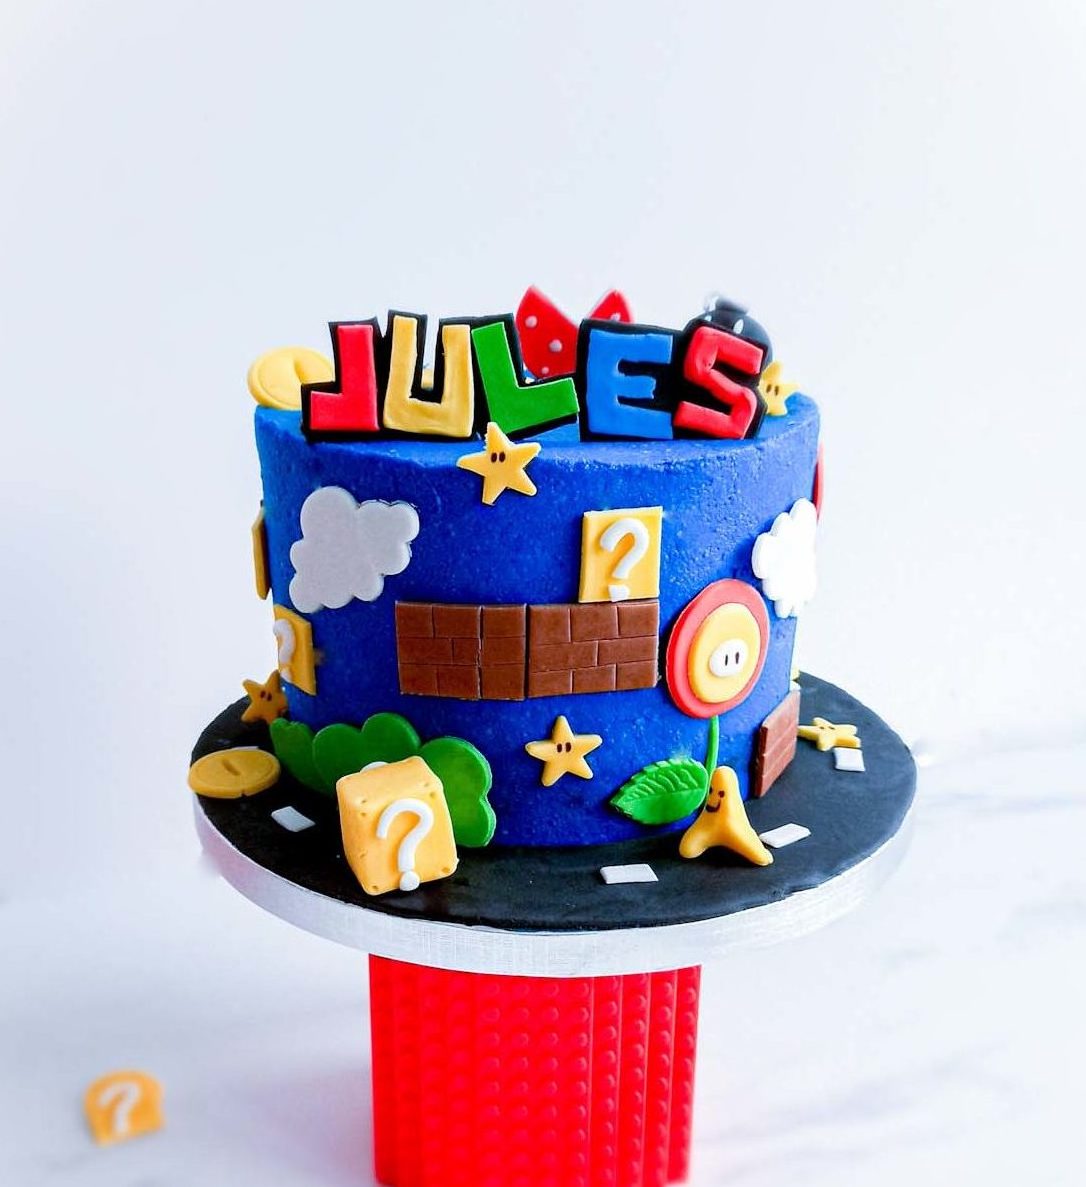 Gâteau d'anniversaire personnalisé Mario : pour les petits comme